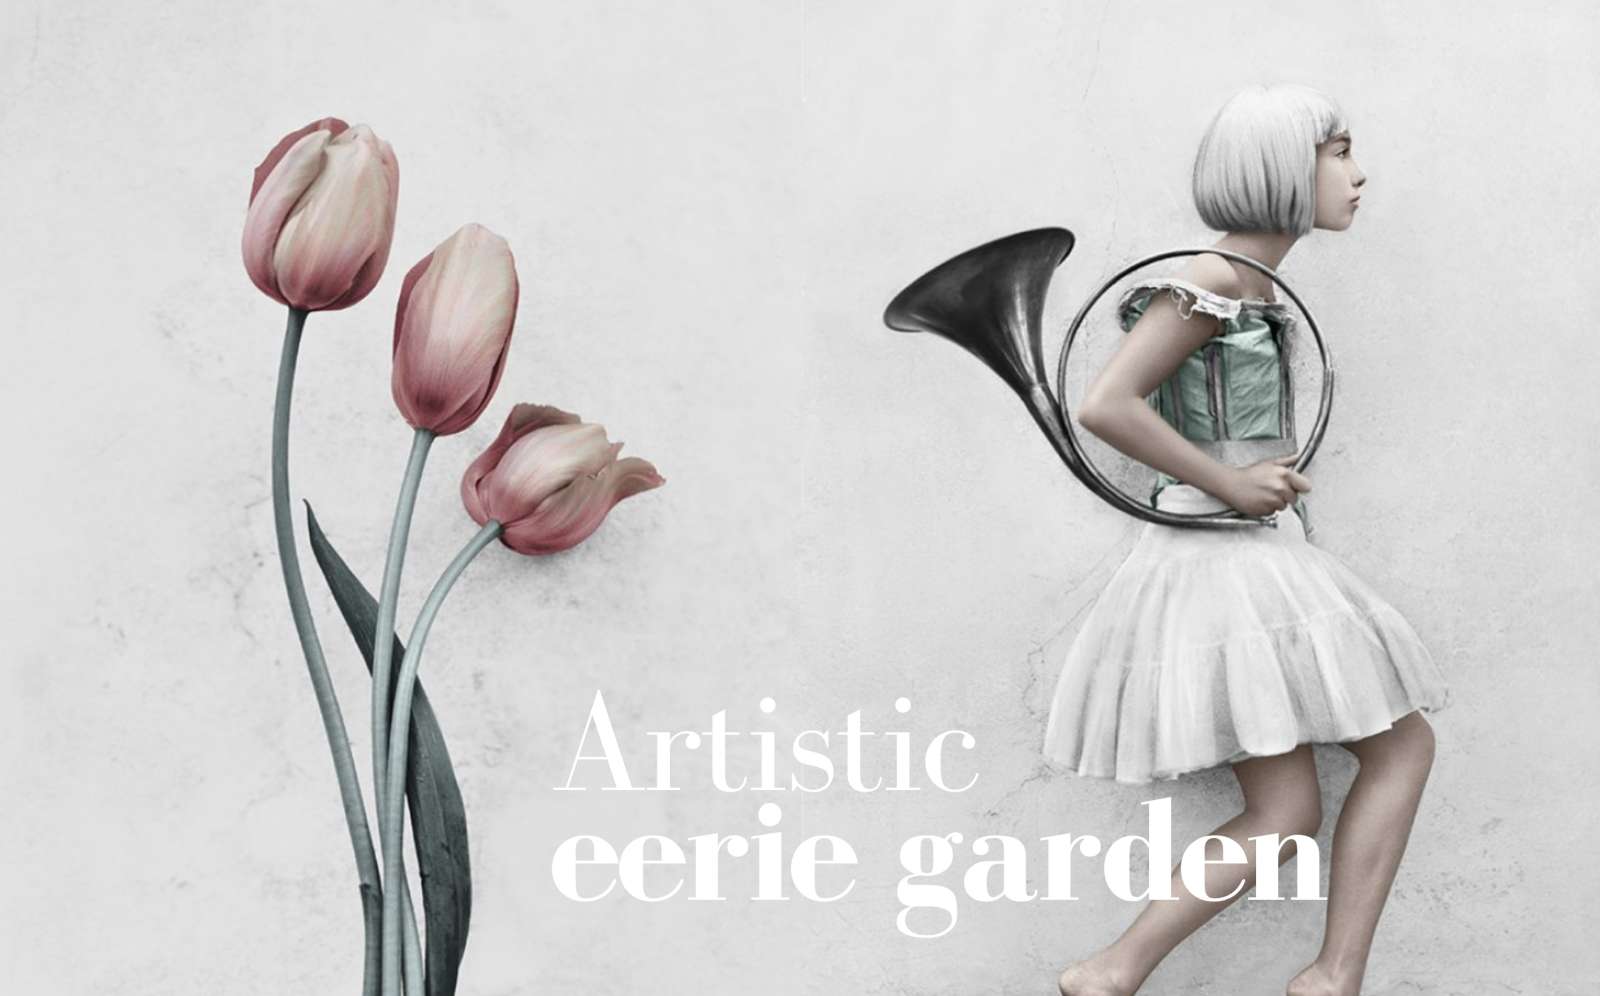 Artistic Eerie Garden: Interview with Vee Speers